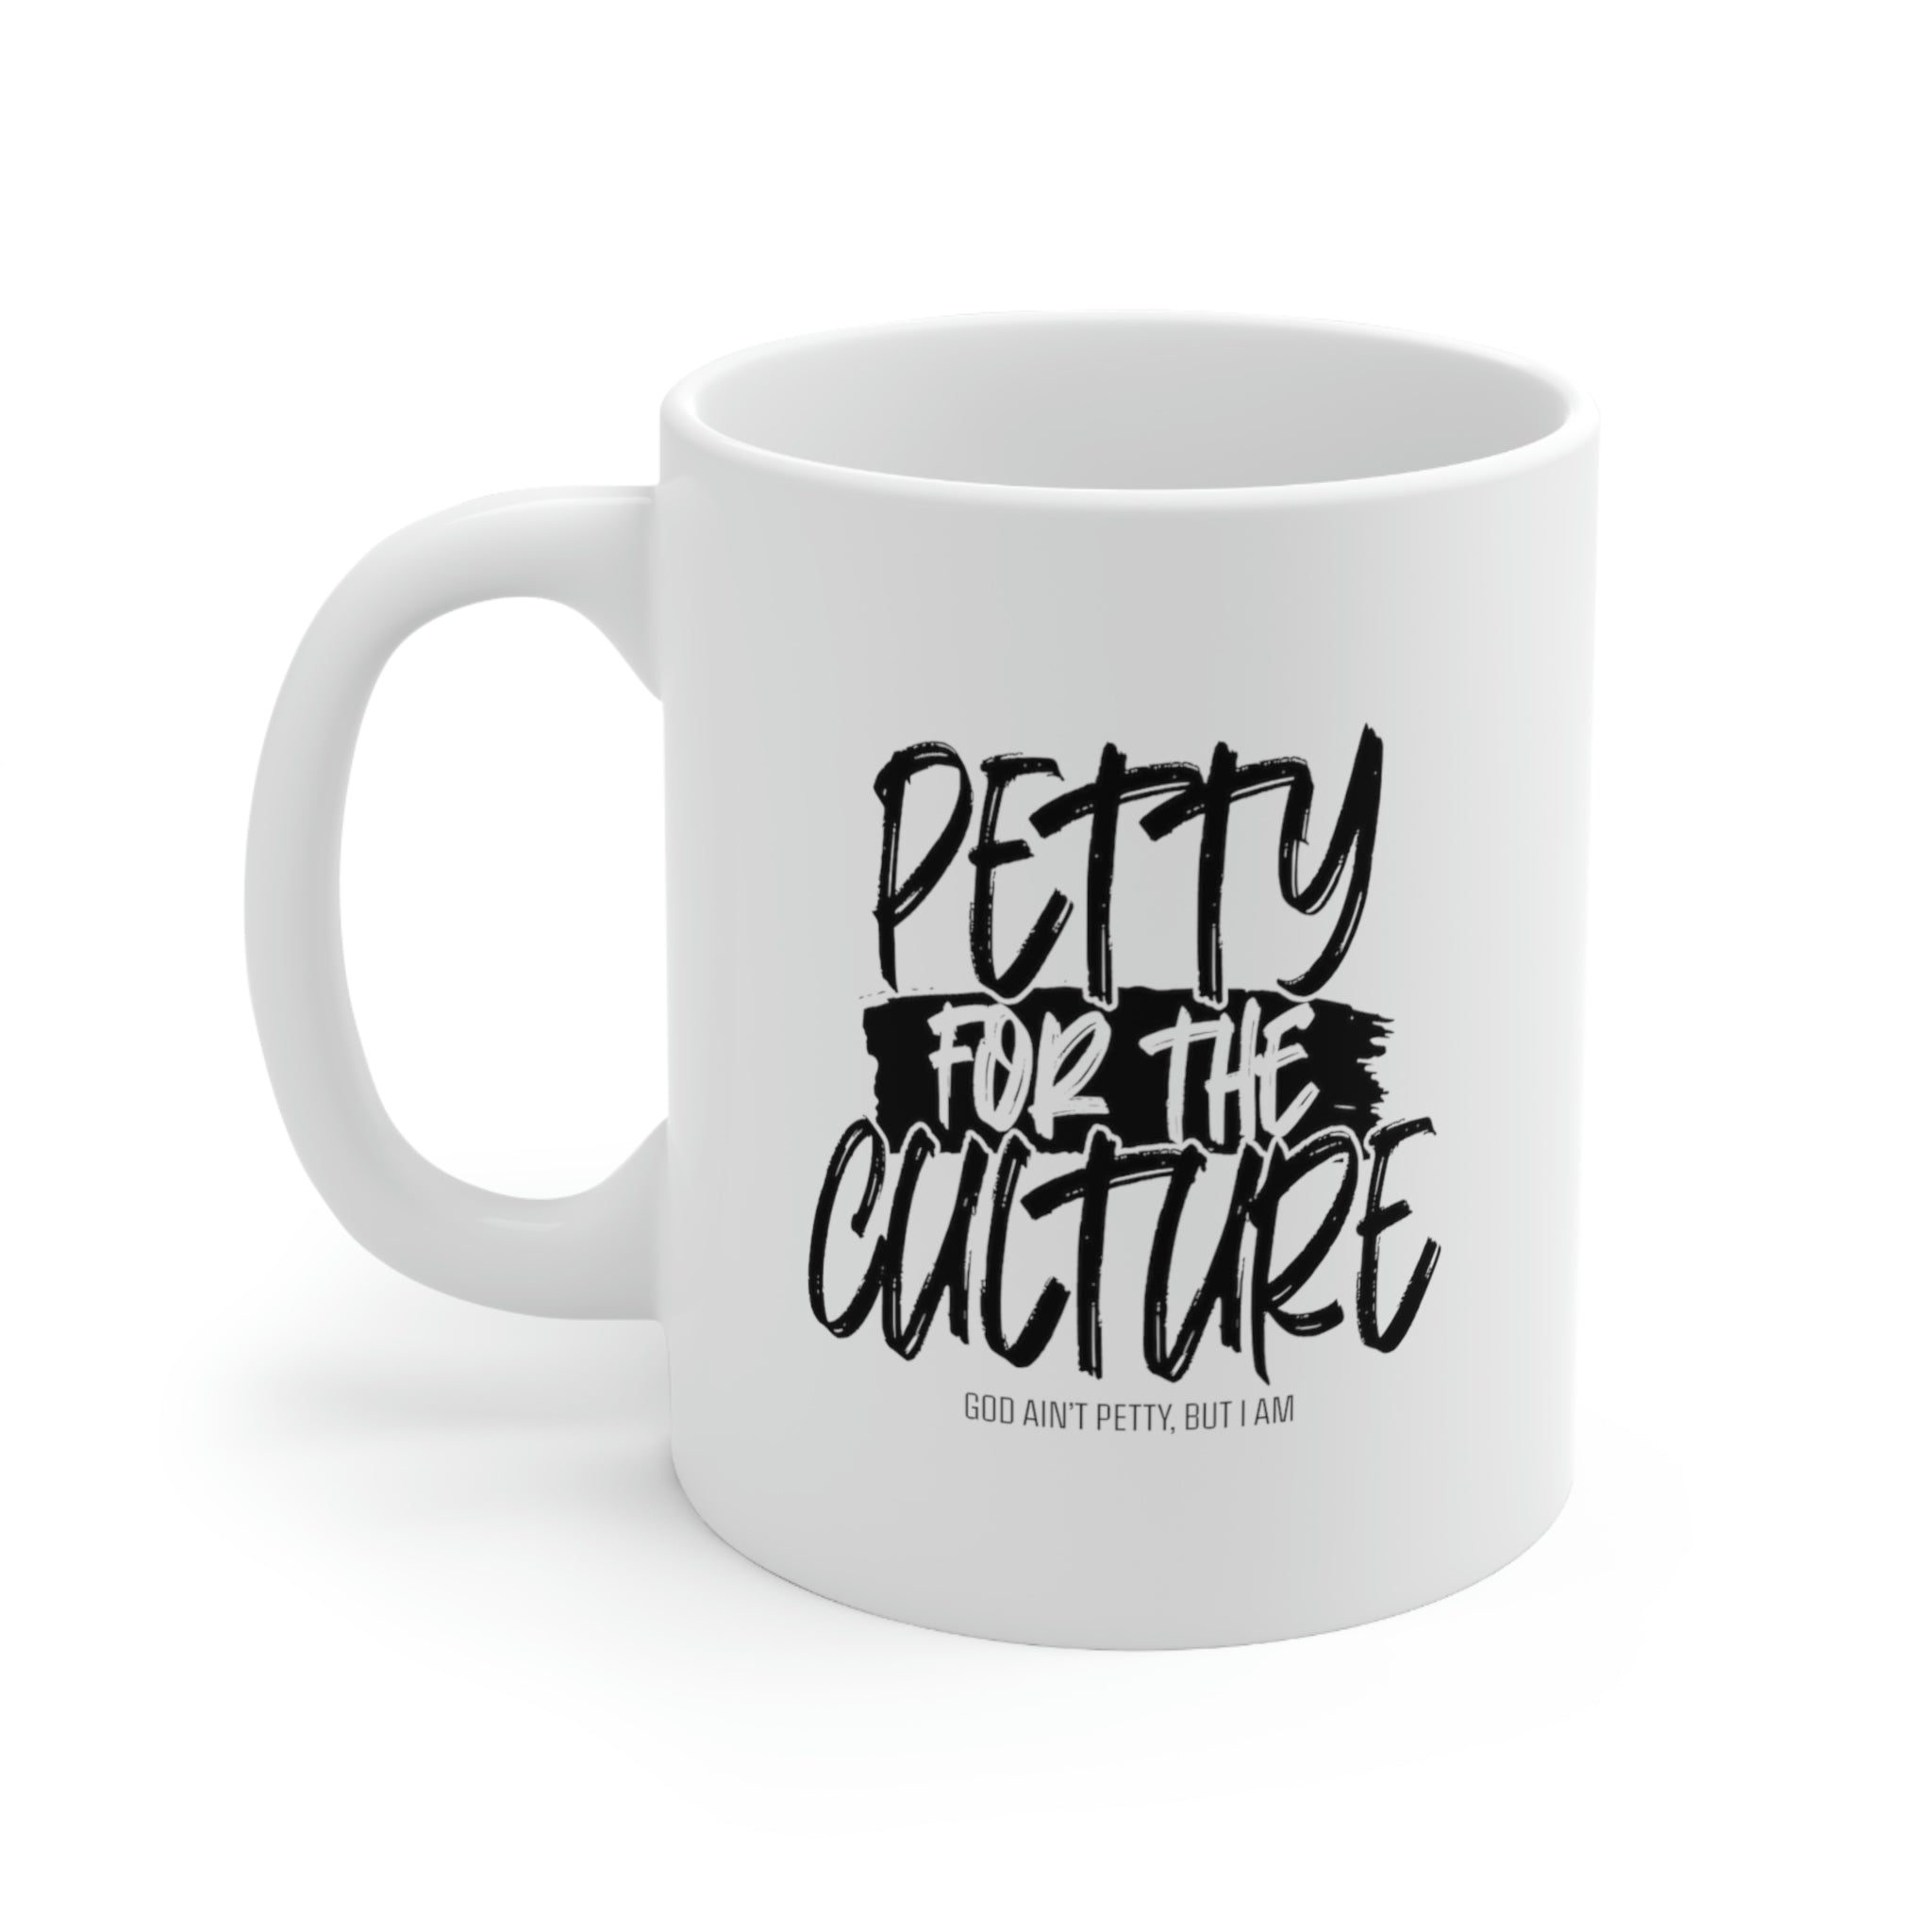 Petty for the Culture Mug 11oz (White/Black)-Mug-The Original God Ain't Petty But I Am